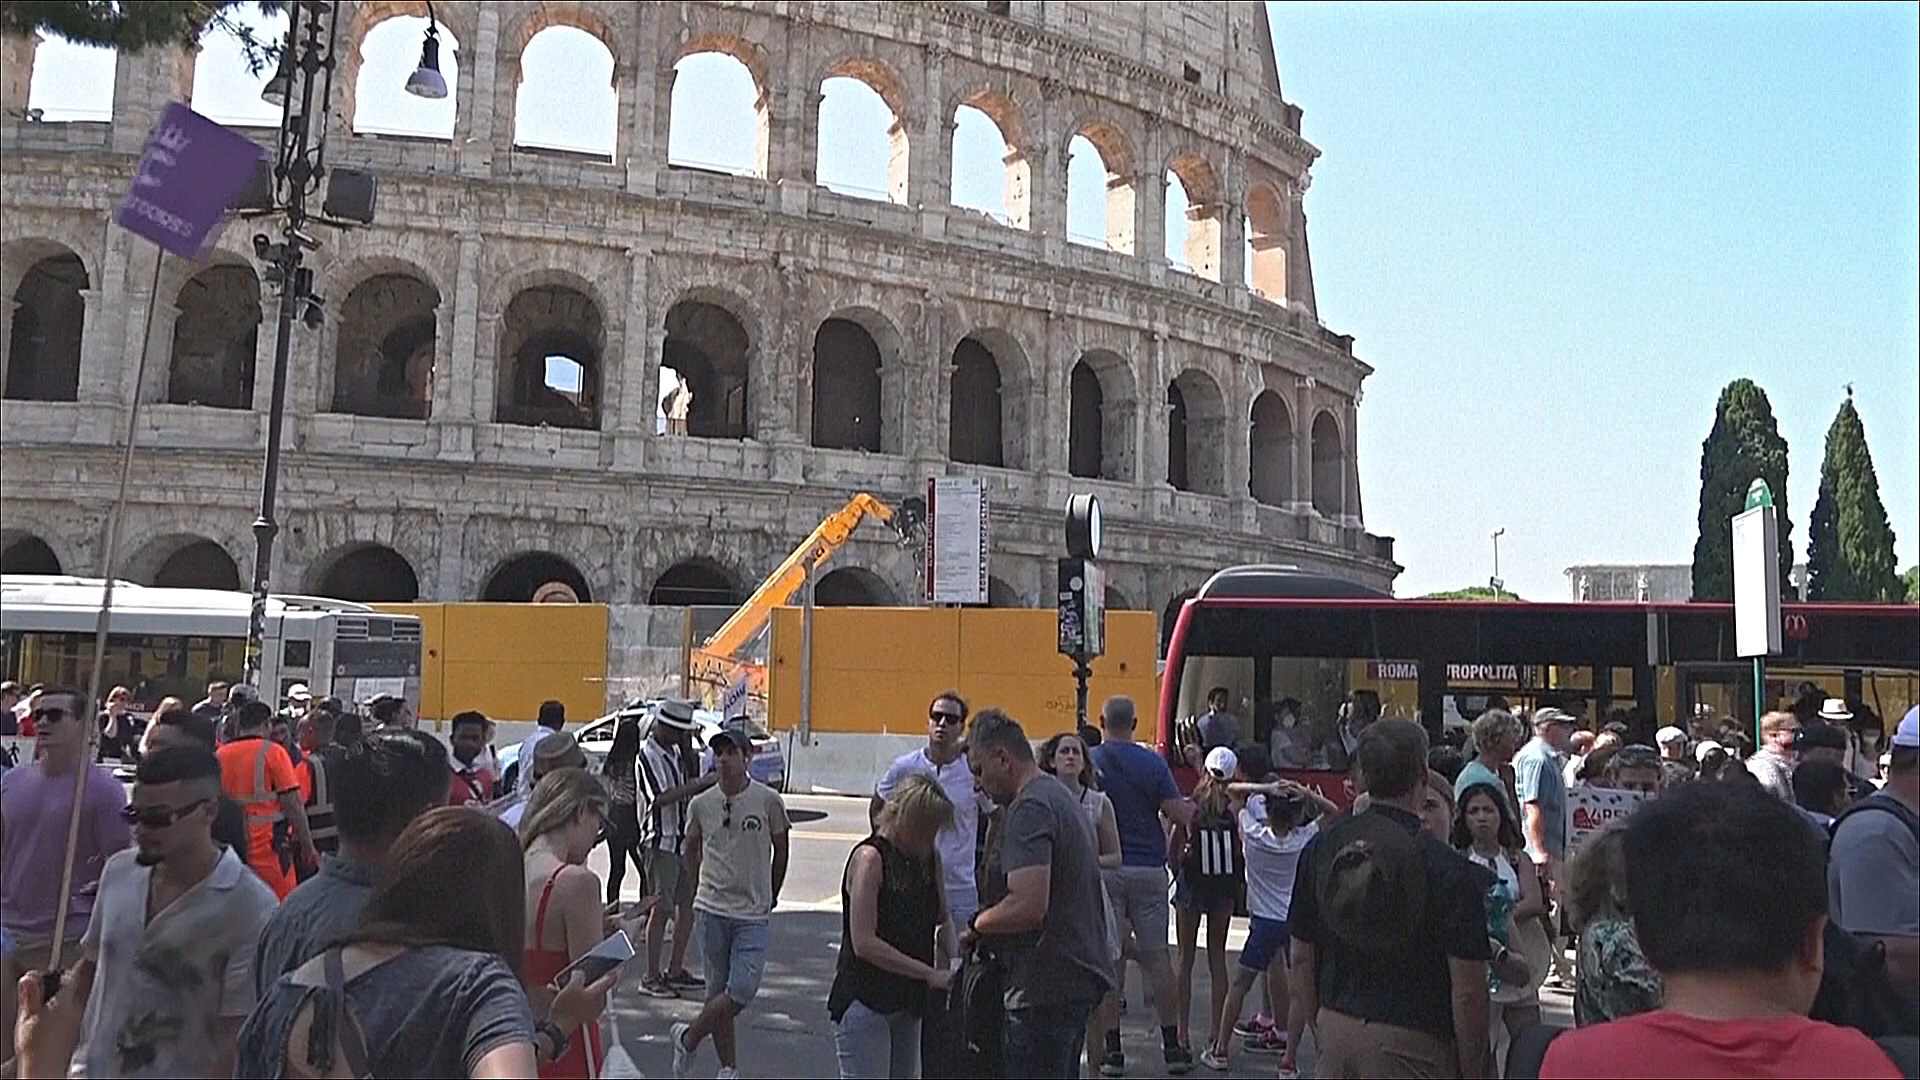 Жители Рима не рады наплыву туристов